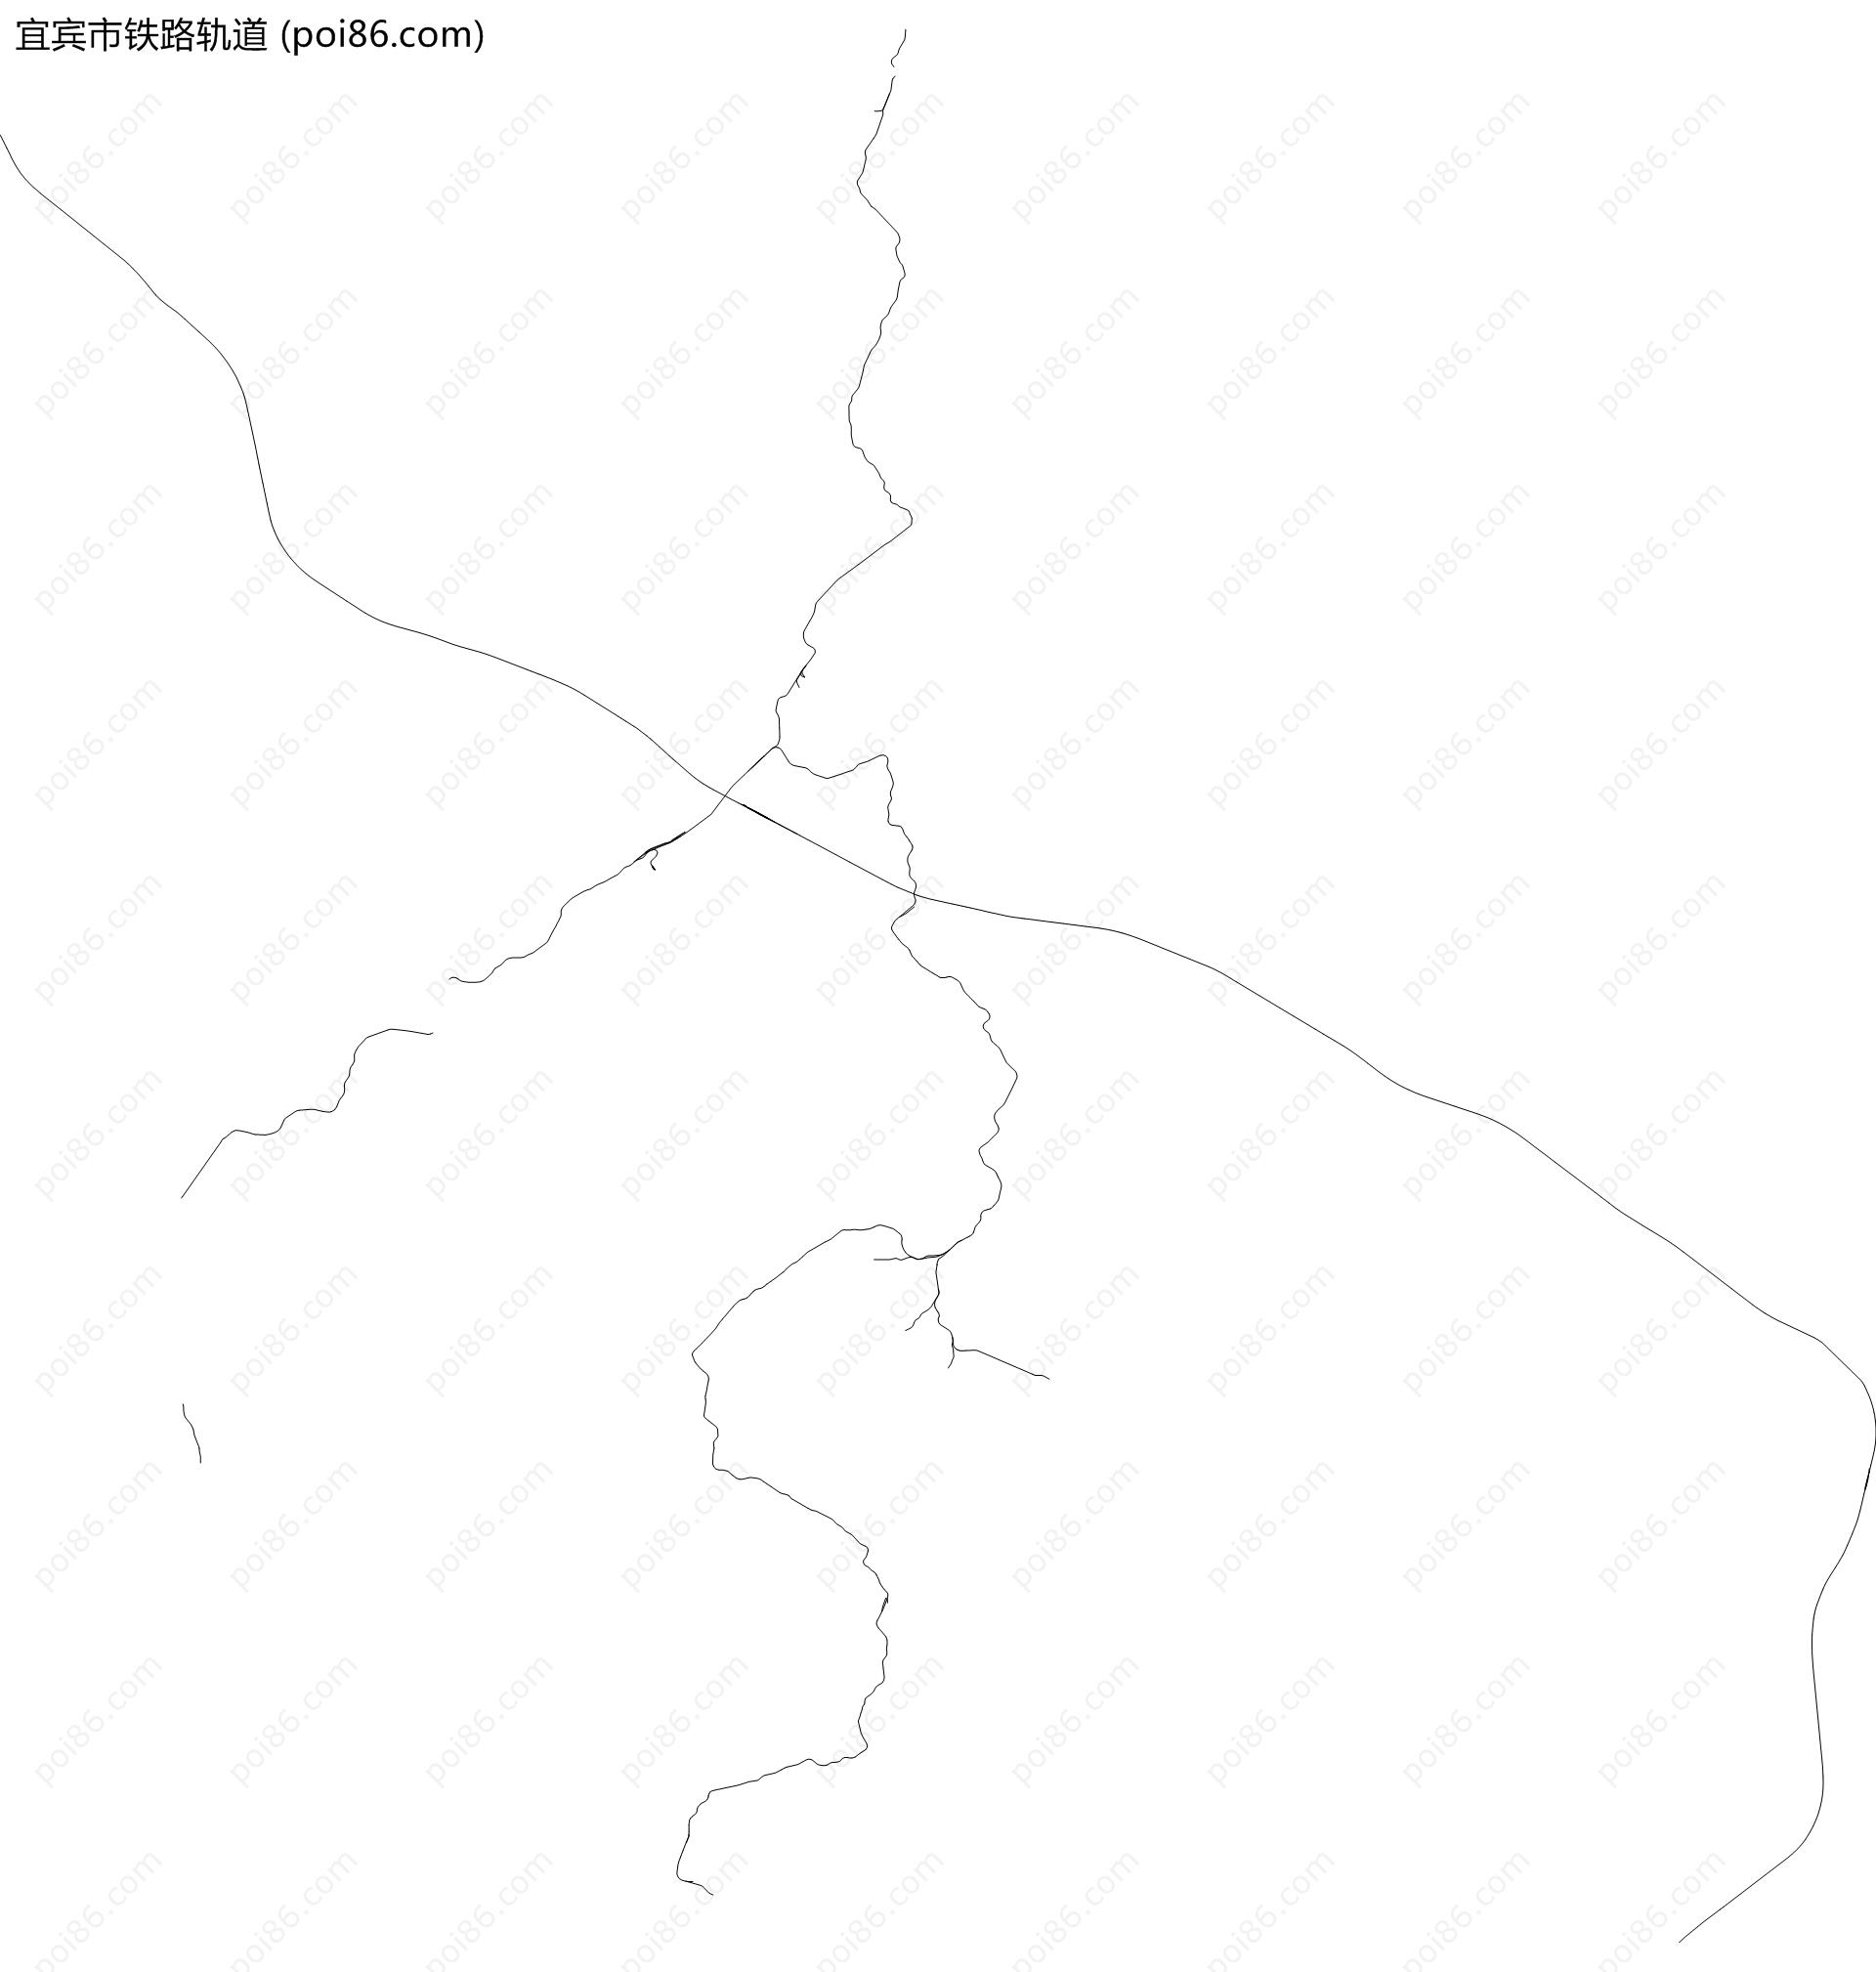 宜宾市铁路轨道地图